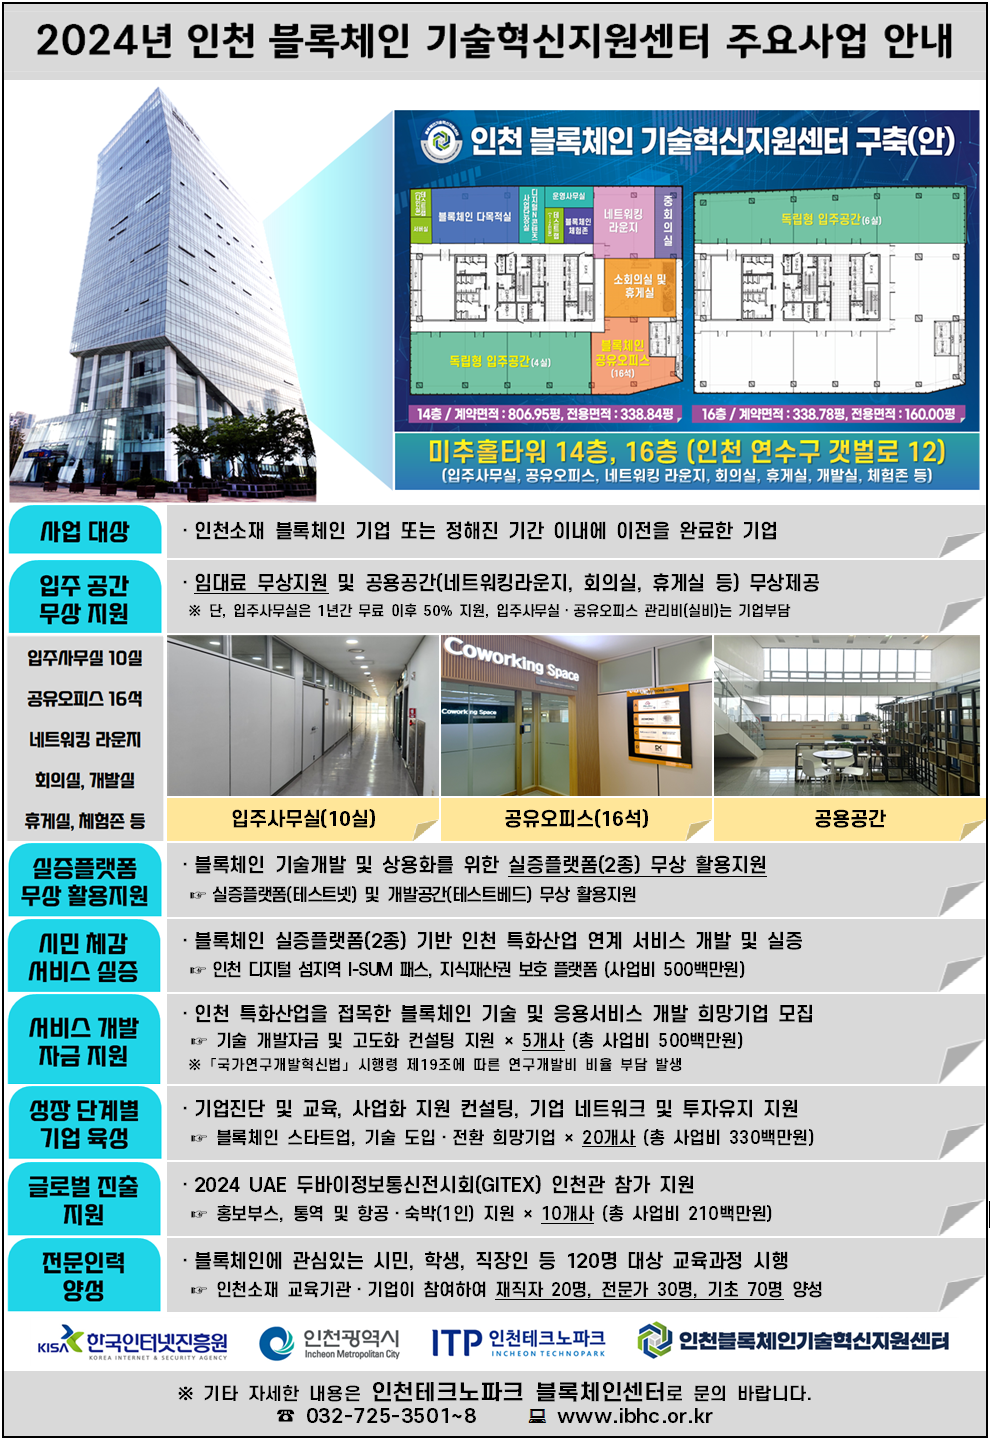 인천 블록체인 기술혁신지원센터 주요사업 안내